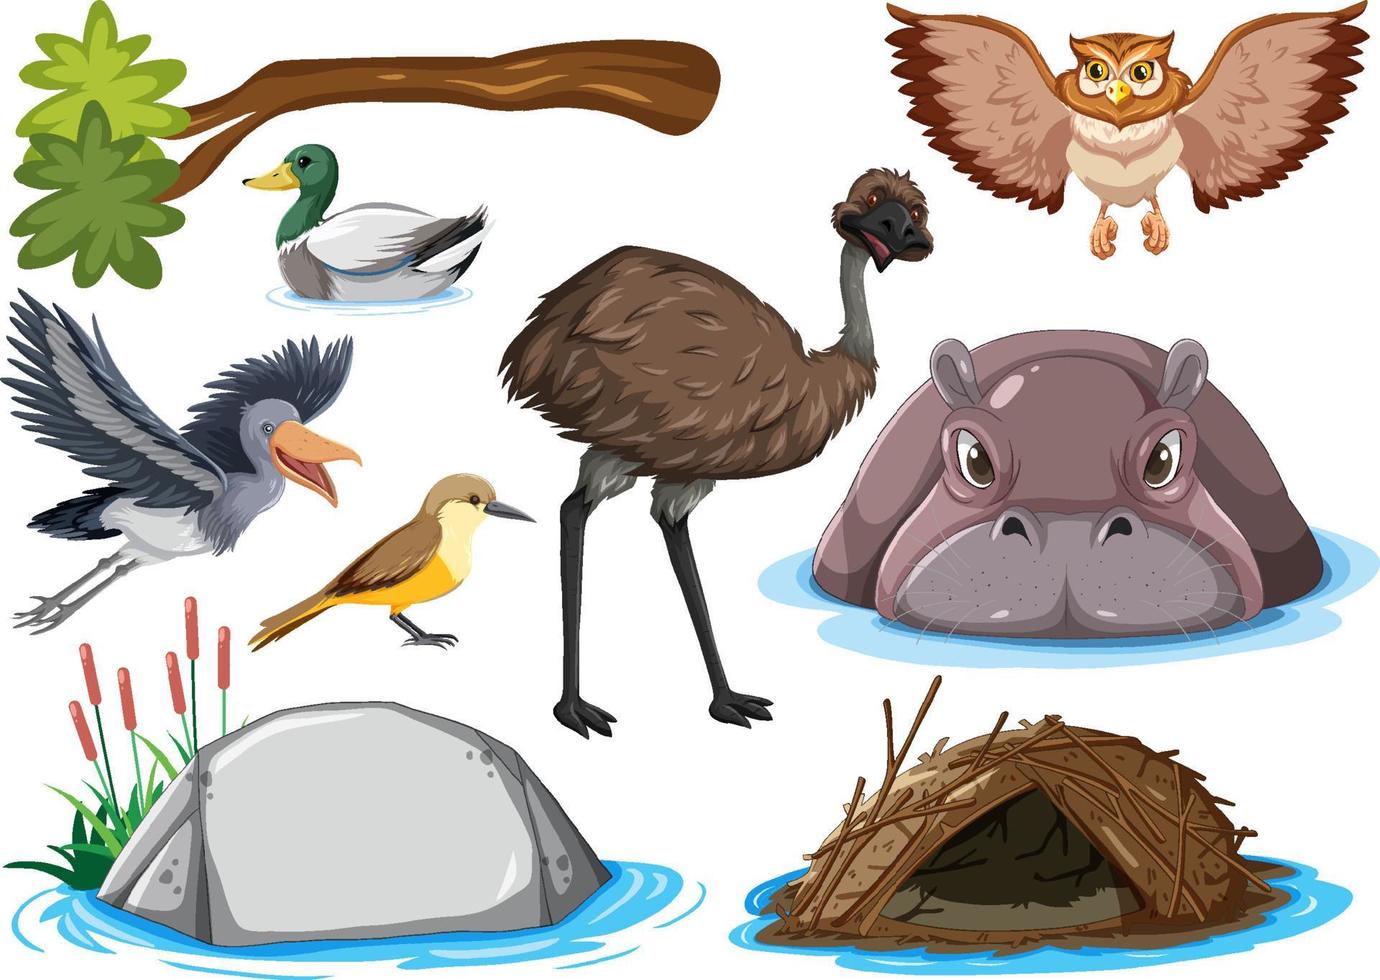 colección de diferentes tipos de animales salvajes vector